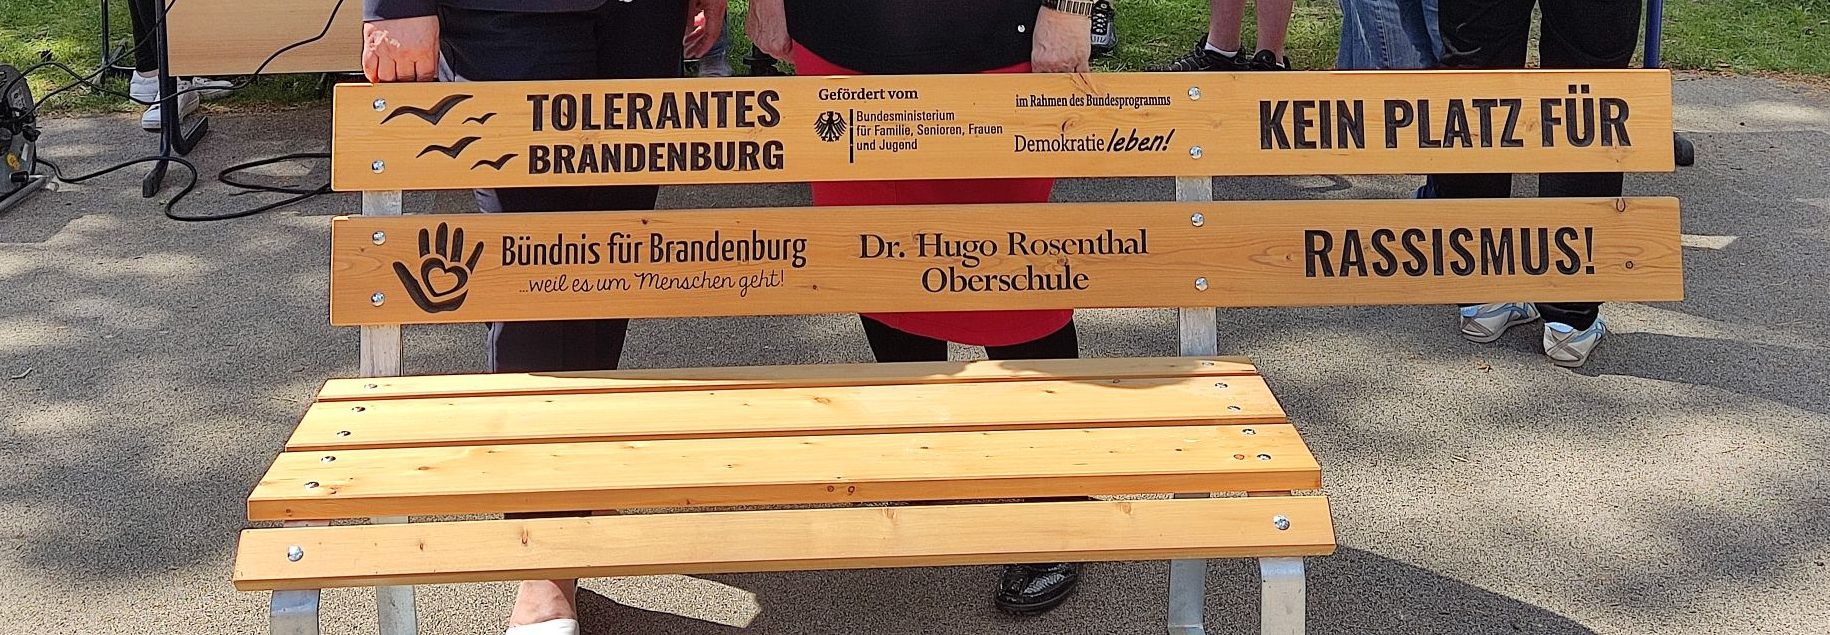 Im Rahmen der bundesweite Aktion "Bänke gegen Rassismus" werden auch im Landkreis Oberhavel Bänke aufgestellt: Kein Platz für Rassismus.